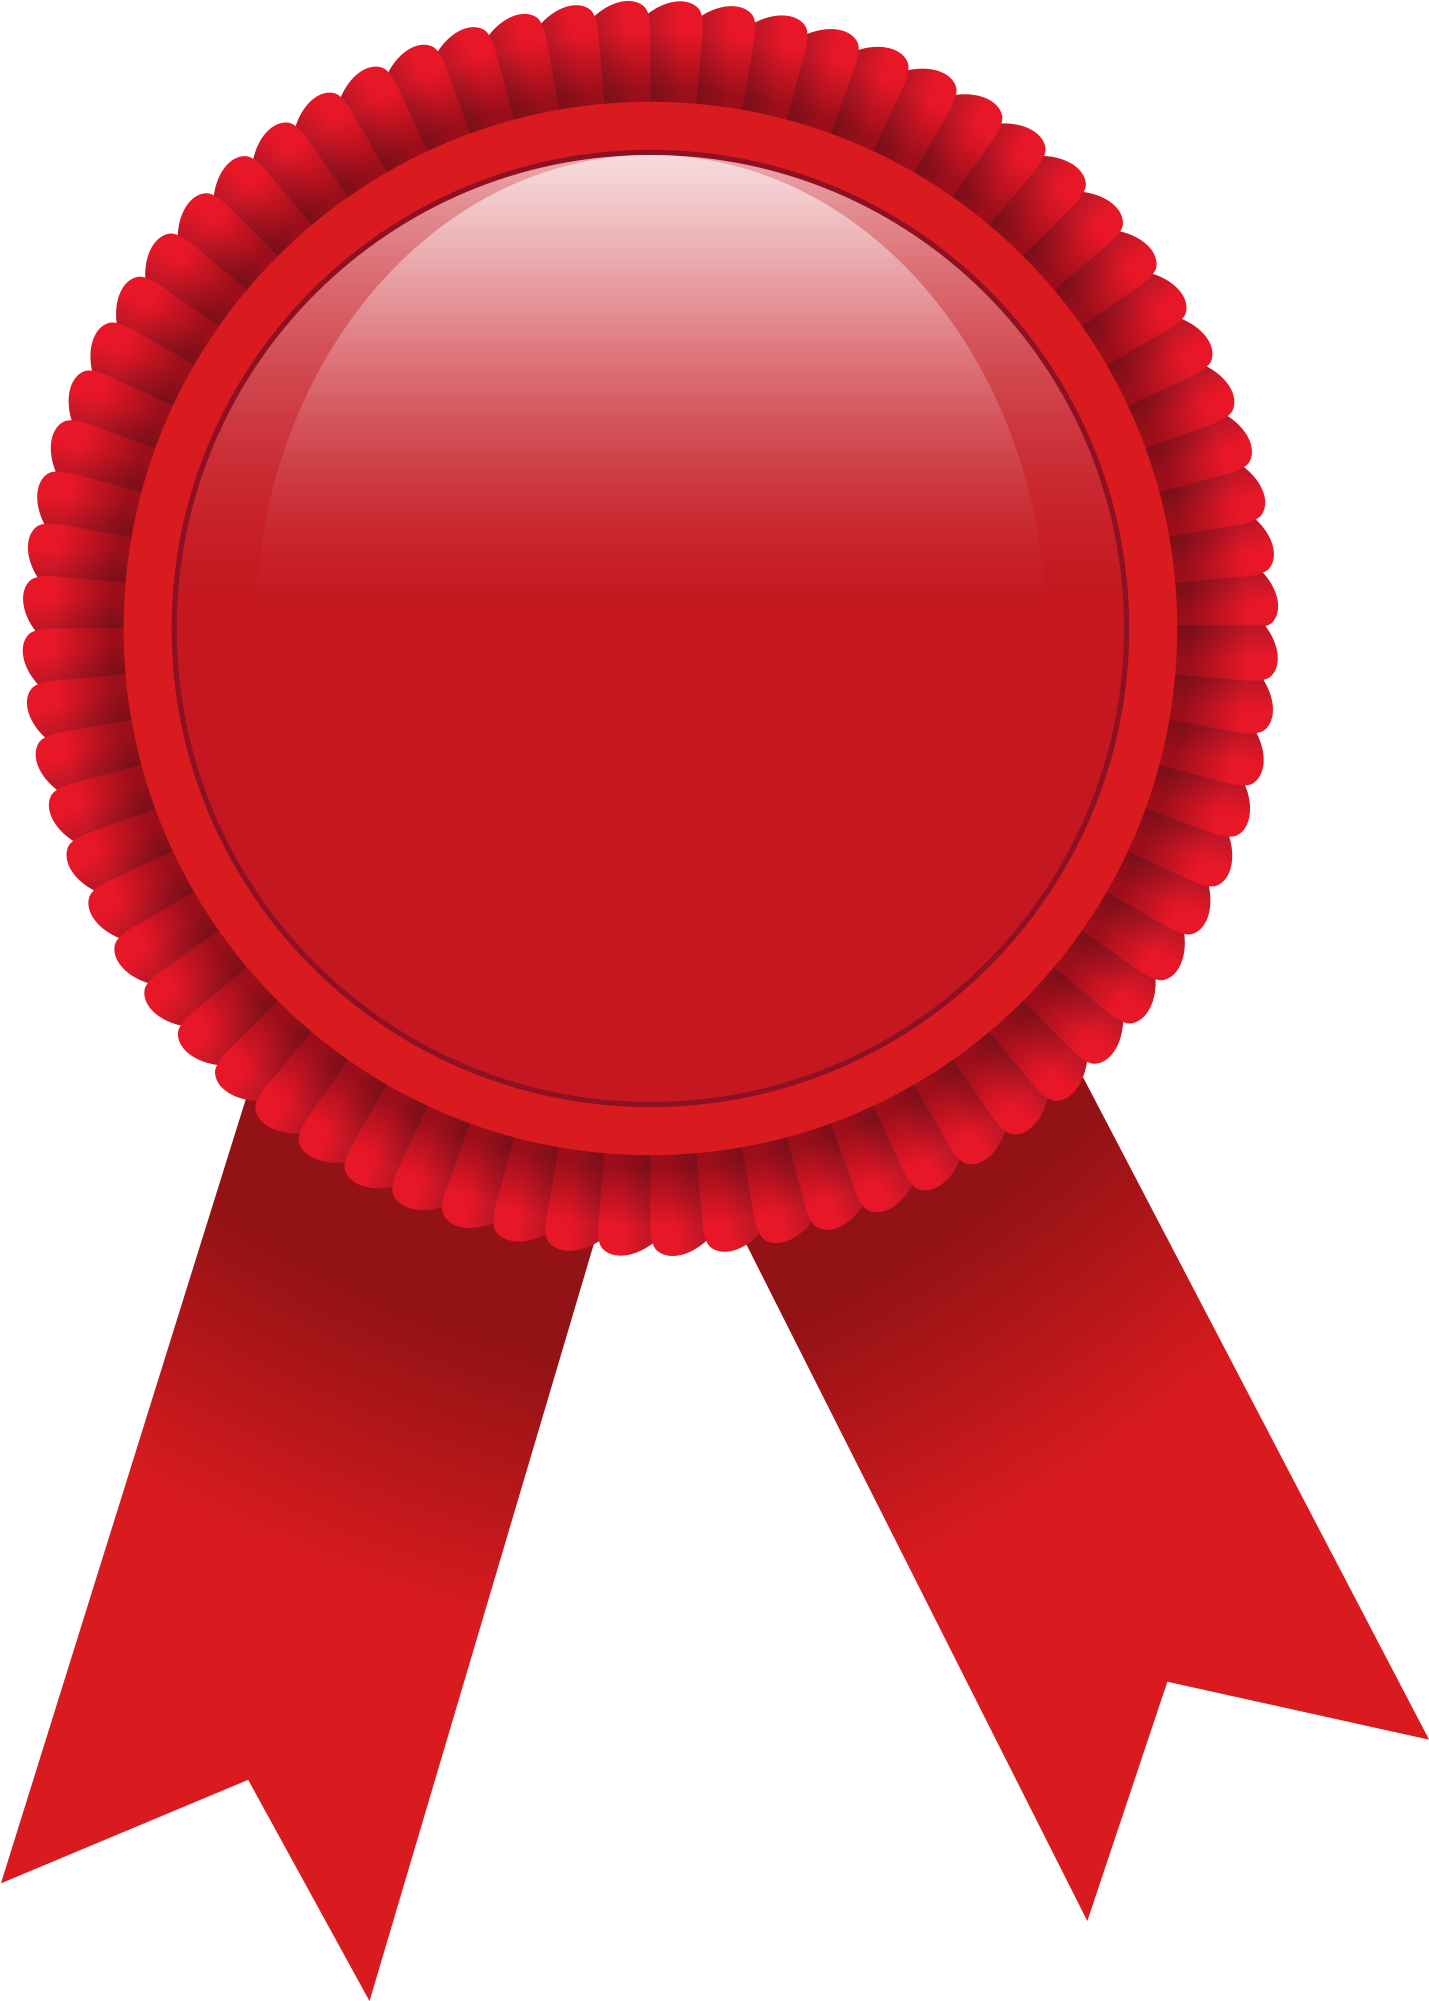 Award Badge Transparent Image